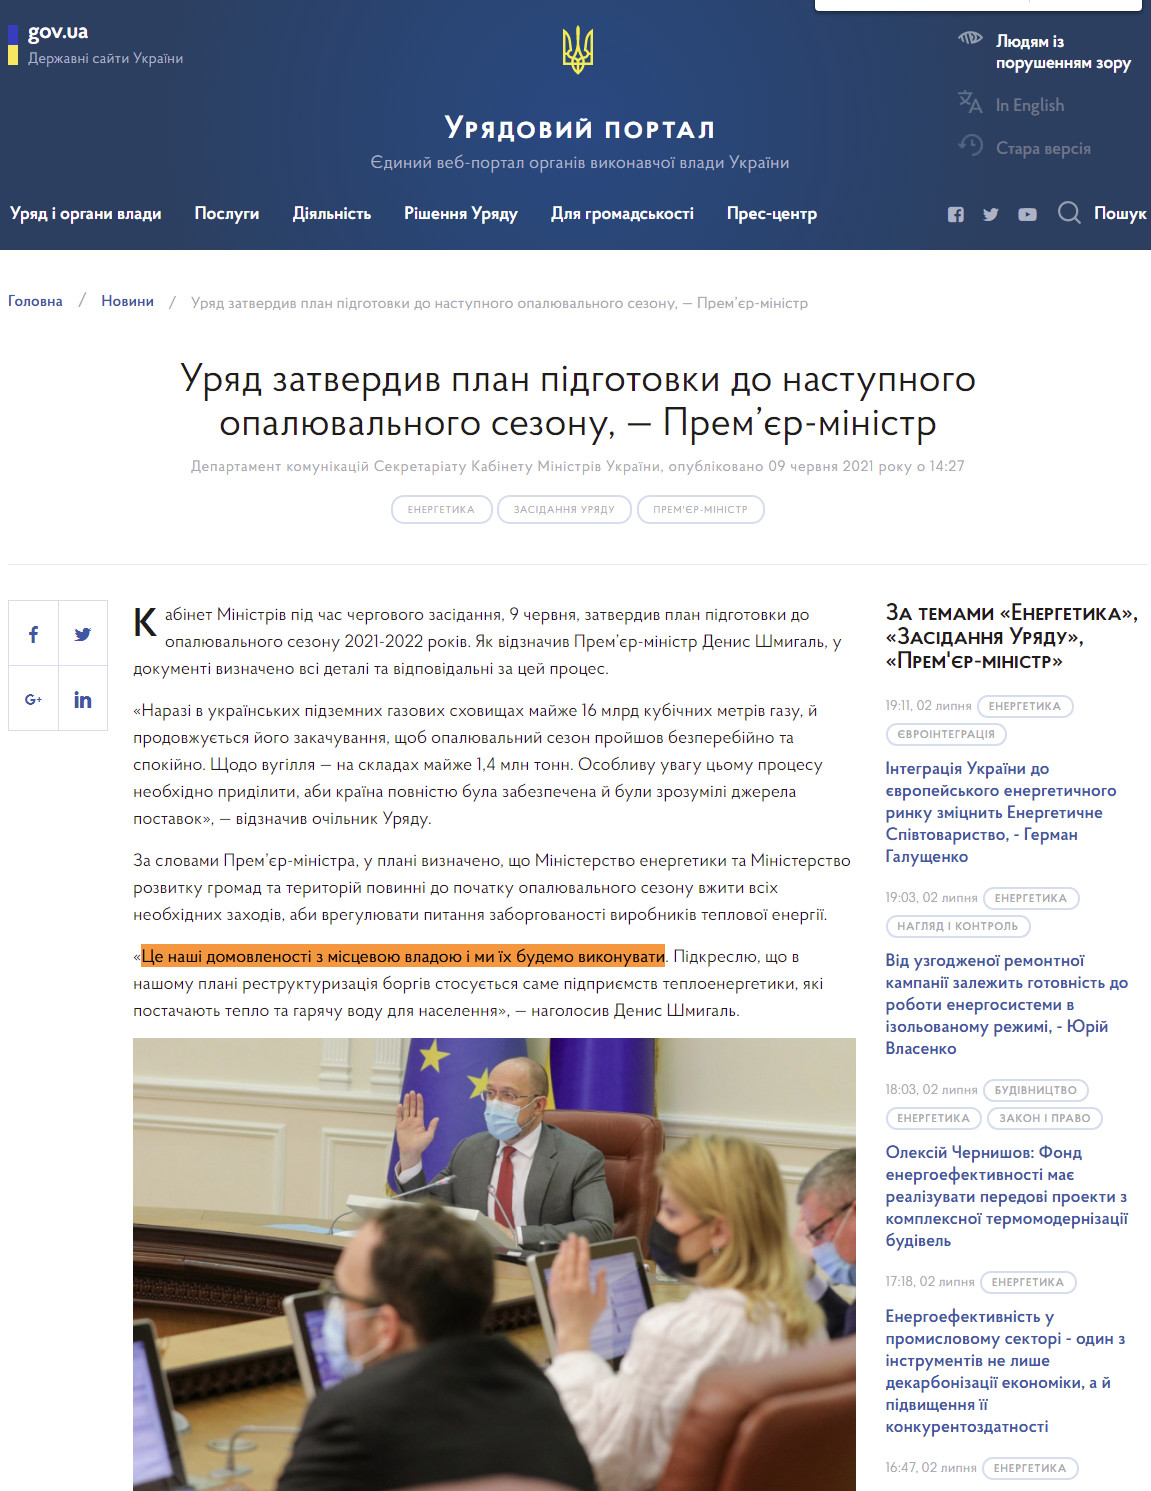 https://www.kmu.gov.ua/news/uryad-zatverdiv-plan-pidgotovki-do-nastupnogo-opalyuvalnogo-sezonu-premyer-ministr